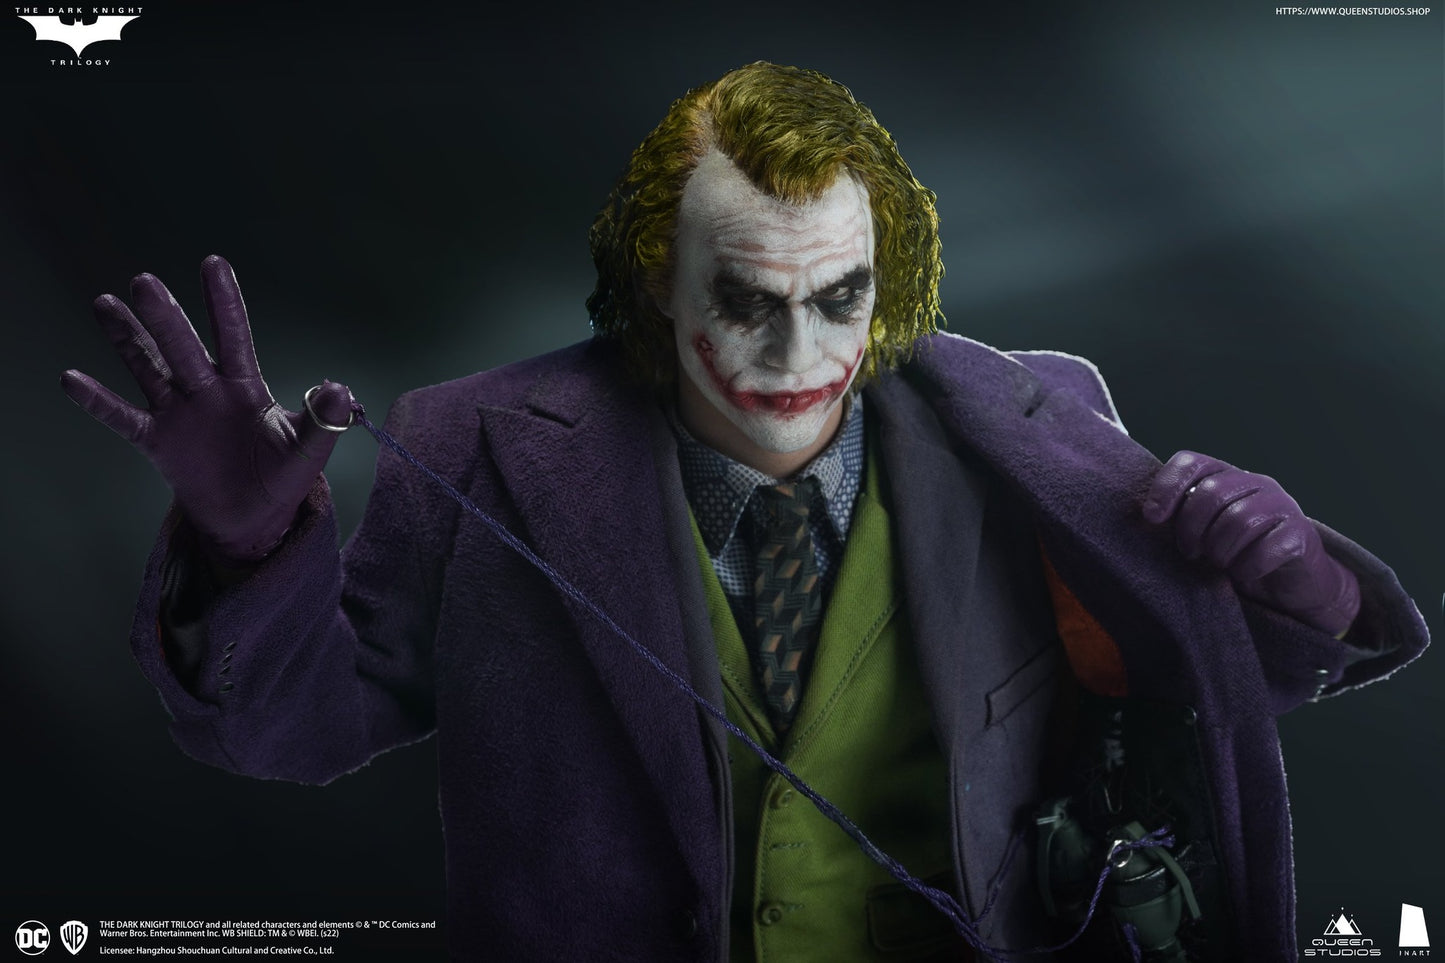 Queen Studios InArt 1/6 DC The Dark Knight Joker Deluxe